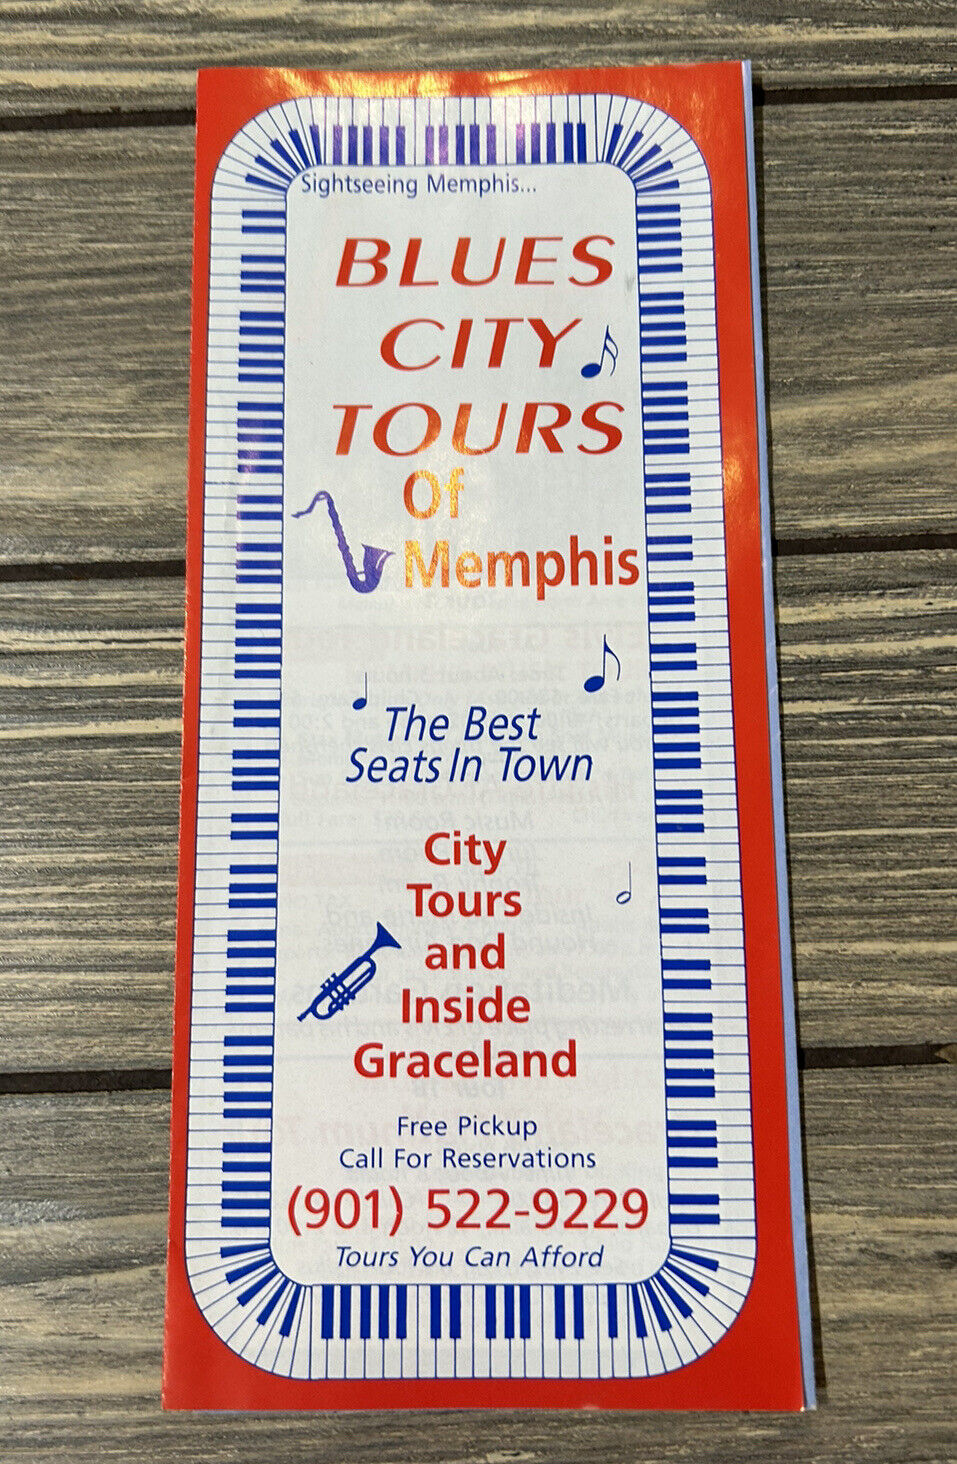 VTG Blue City Tours of Memphis City Tours and Inside Graceland Brochure Pamphlet